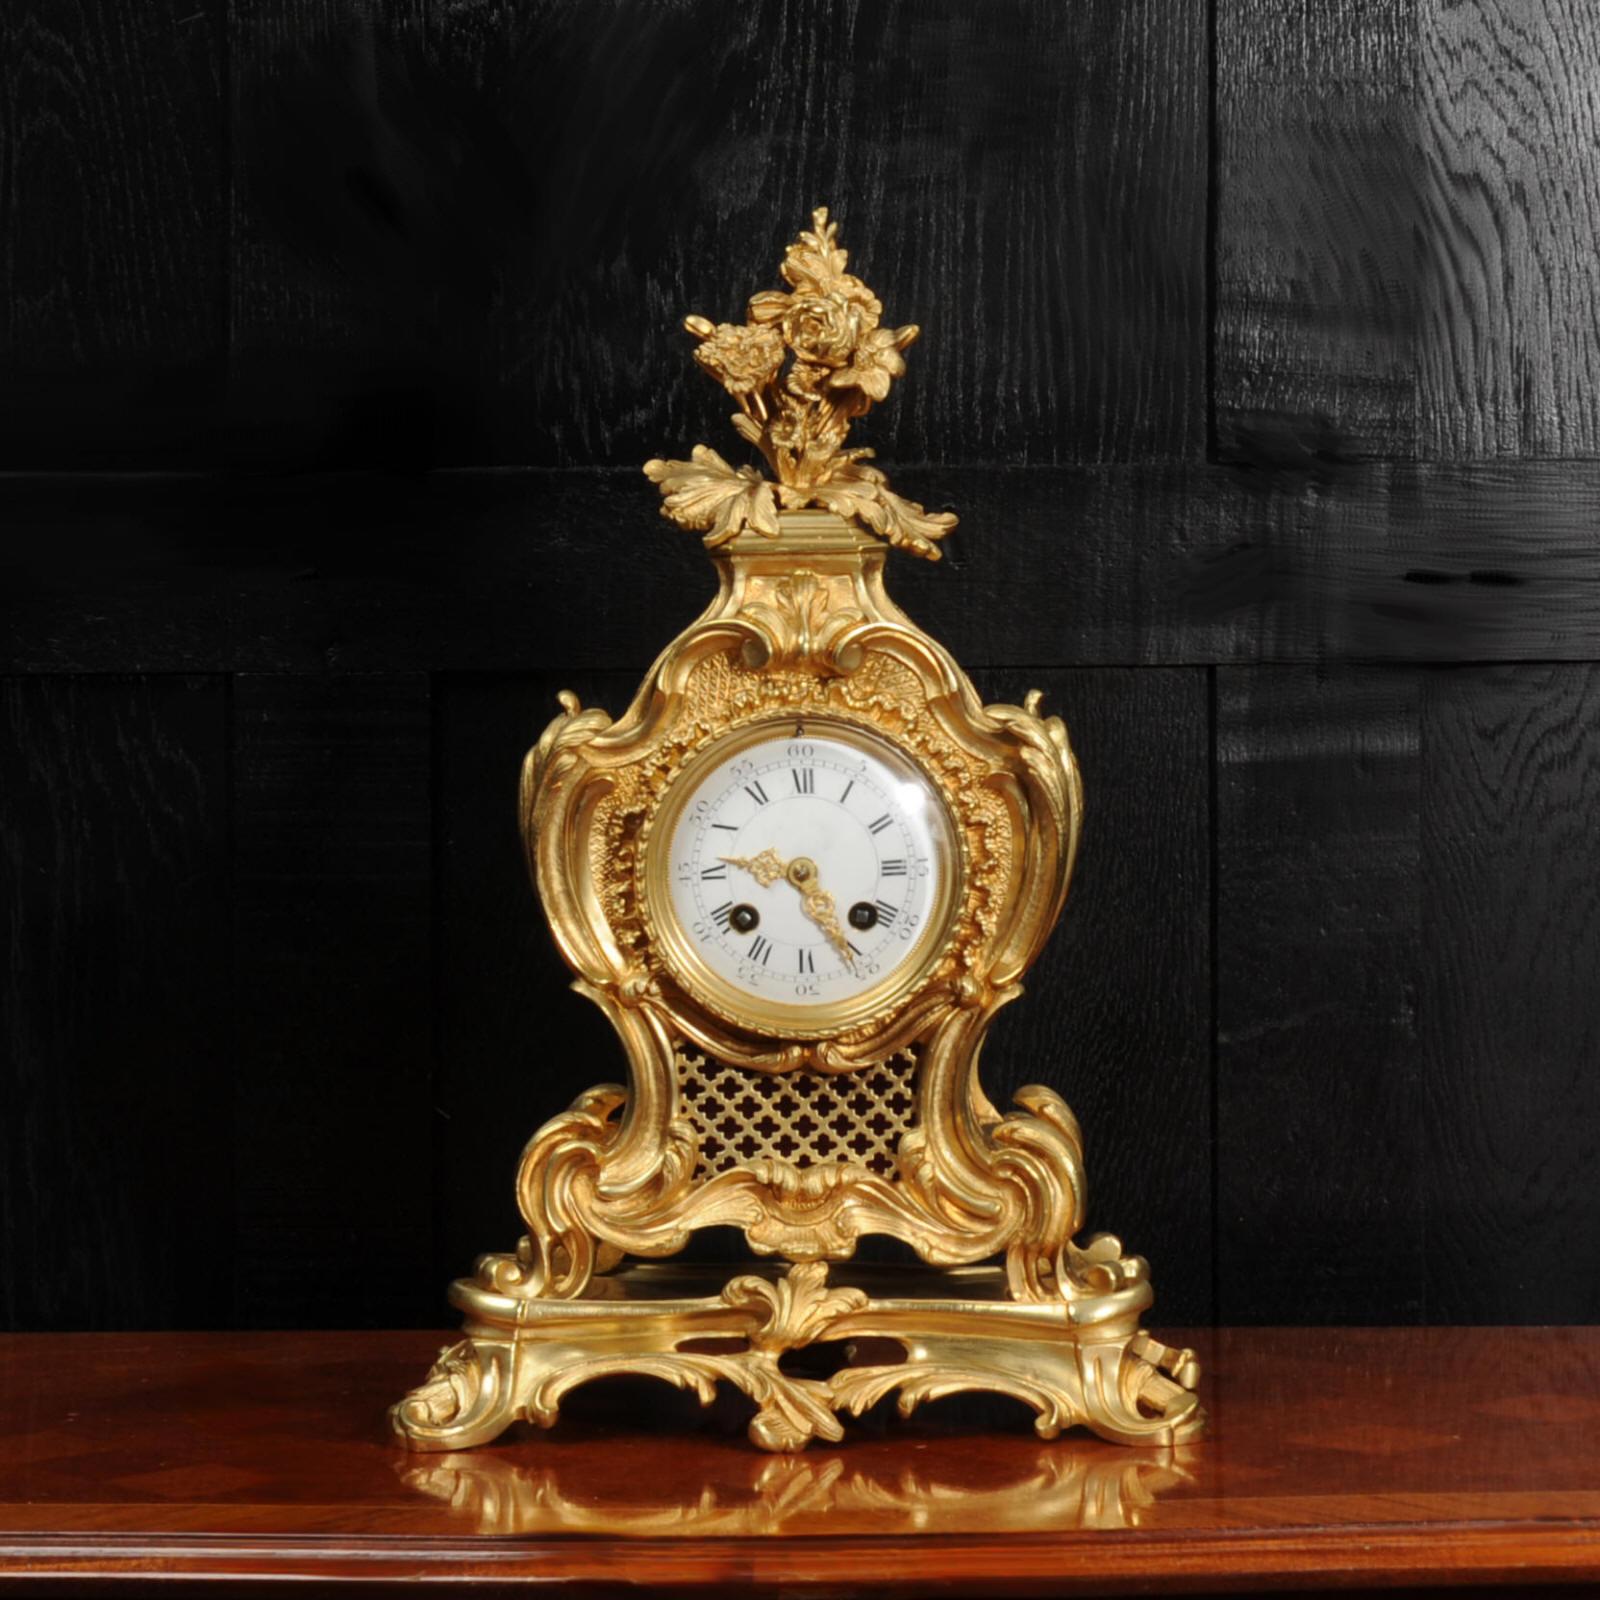 Une superbe horloge rococo française ancienne de Japy Frères. Il est magnifiquement sculpté avec des volutes, des courbes et des feuilles d'acanthe en bronze finement doré. Le sommet est orné de fleurs et de feuillages de style rococo. Des panneaux